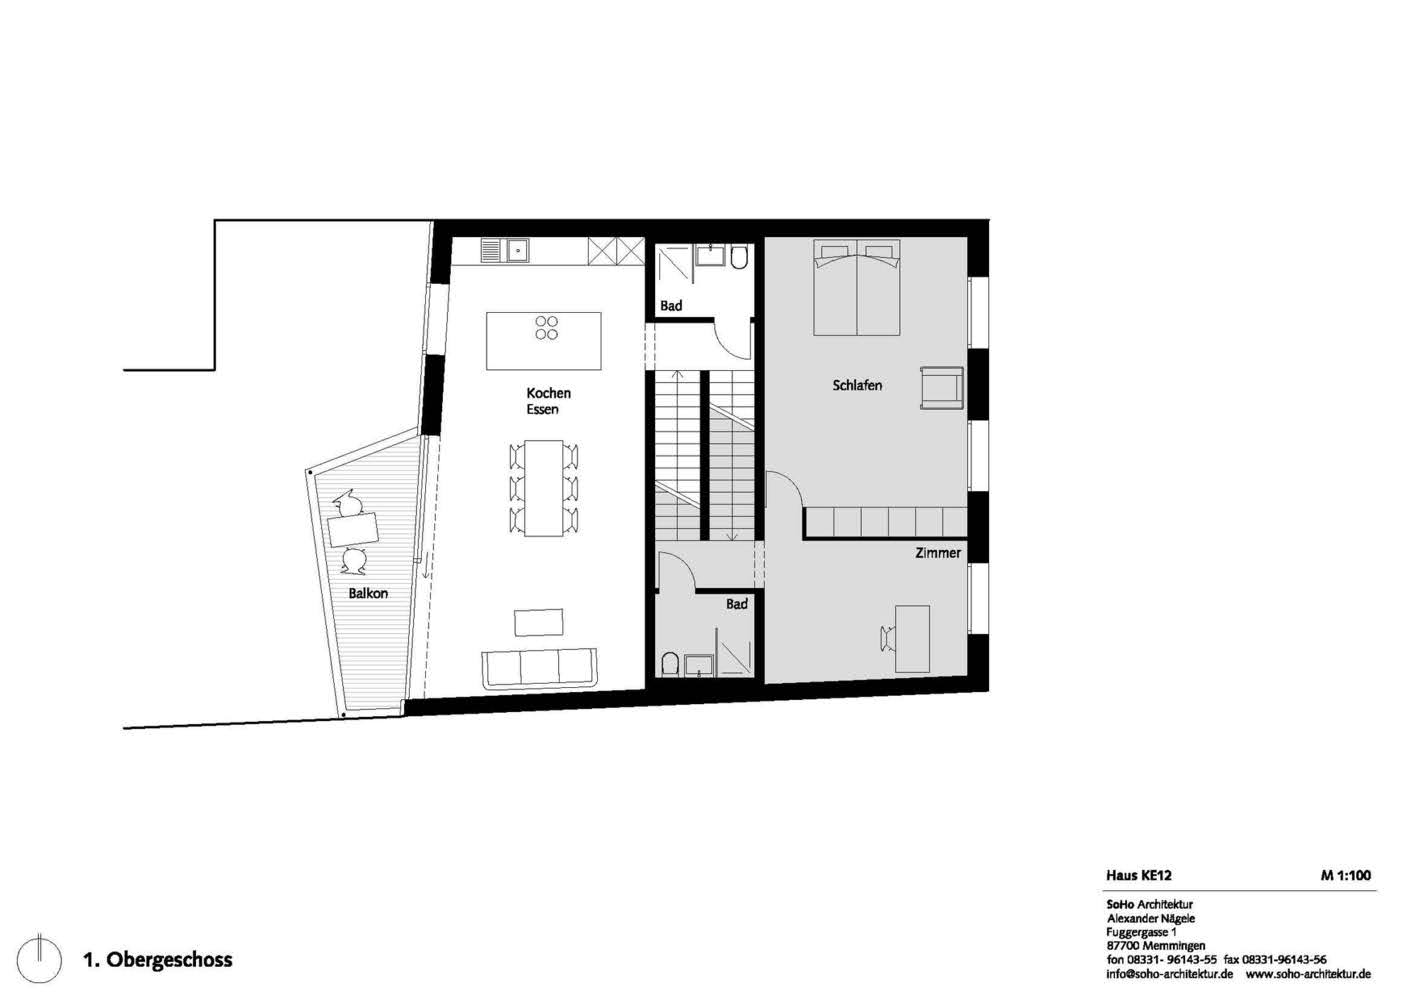 Casa KE12 - SoHo Architektur